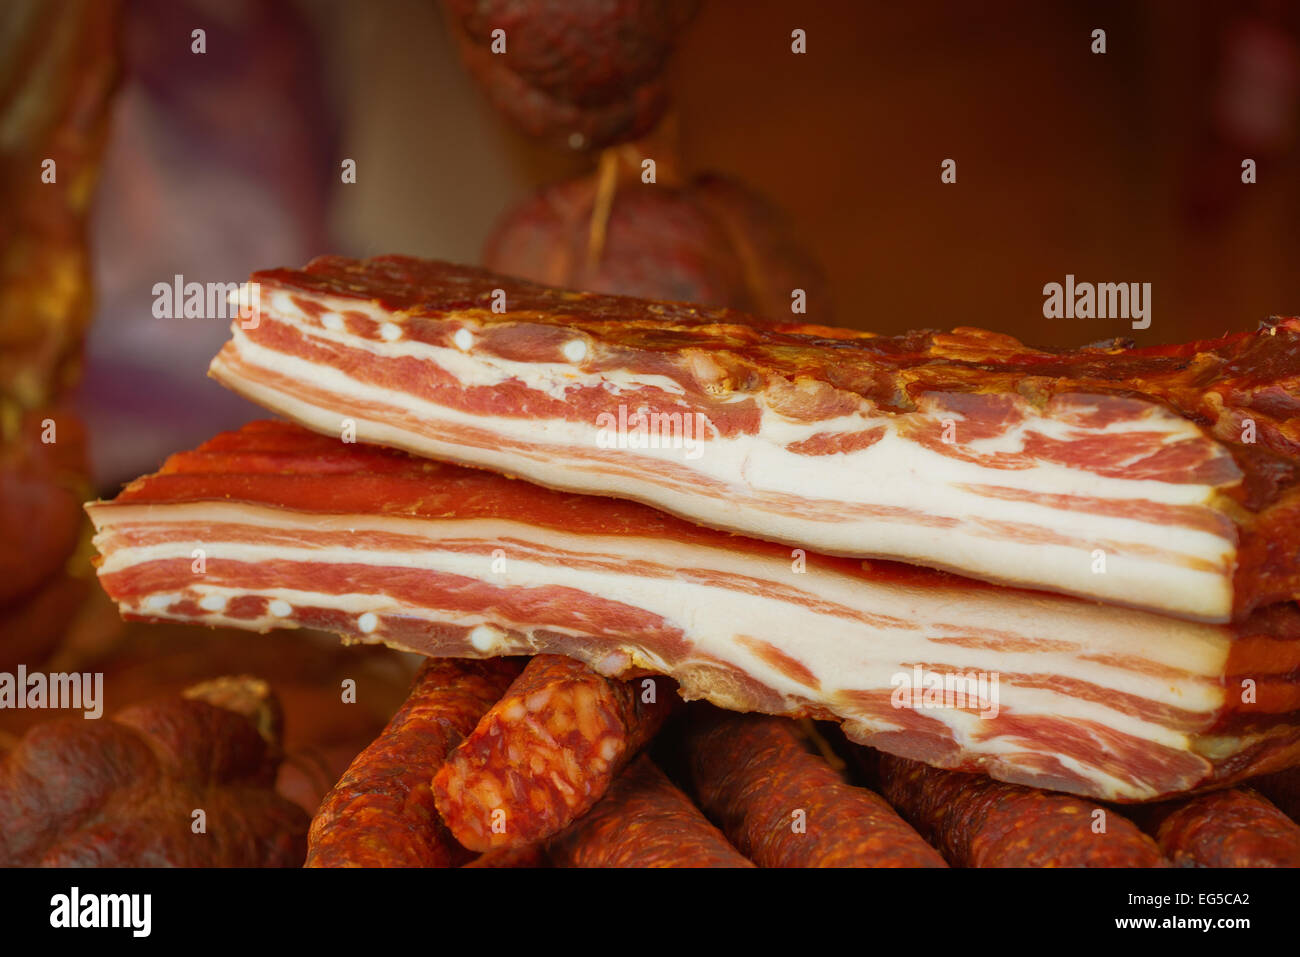 Ausgehärteten Speck Stack, geräuchert und bewahrt Schweinefleisch gilt als eine Delikatesse Essen in einigen Kulturen. Stockfoto